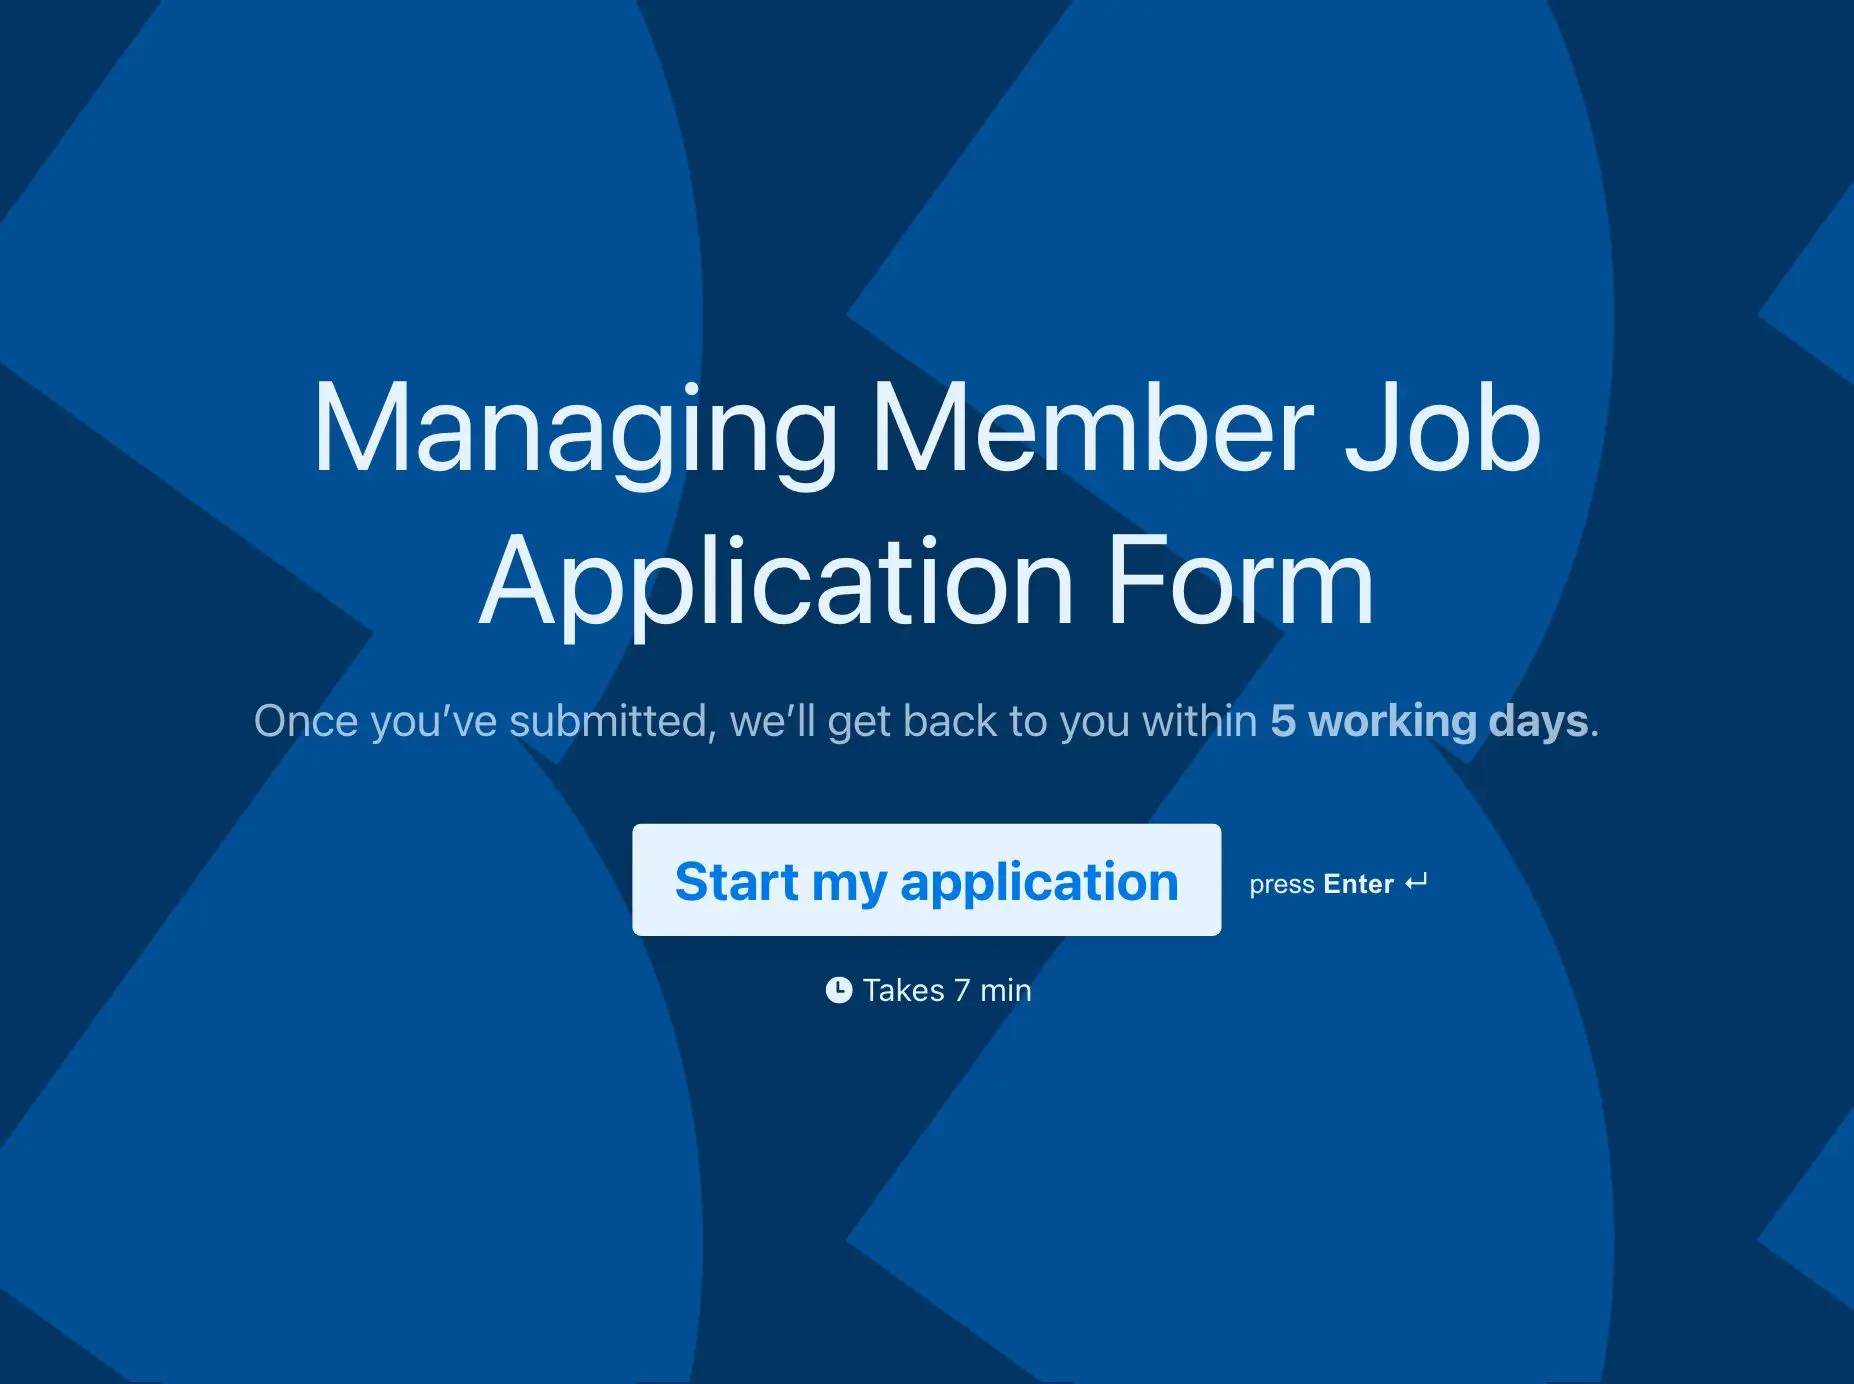 Managing Member Job Application Form Template Hero